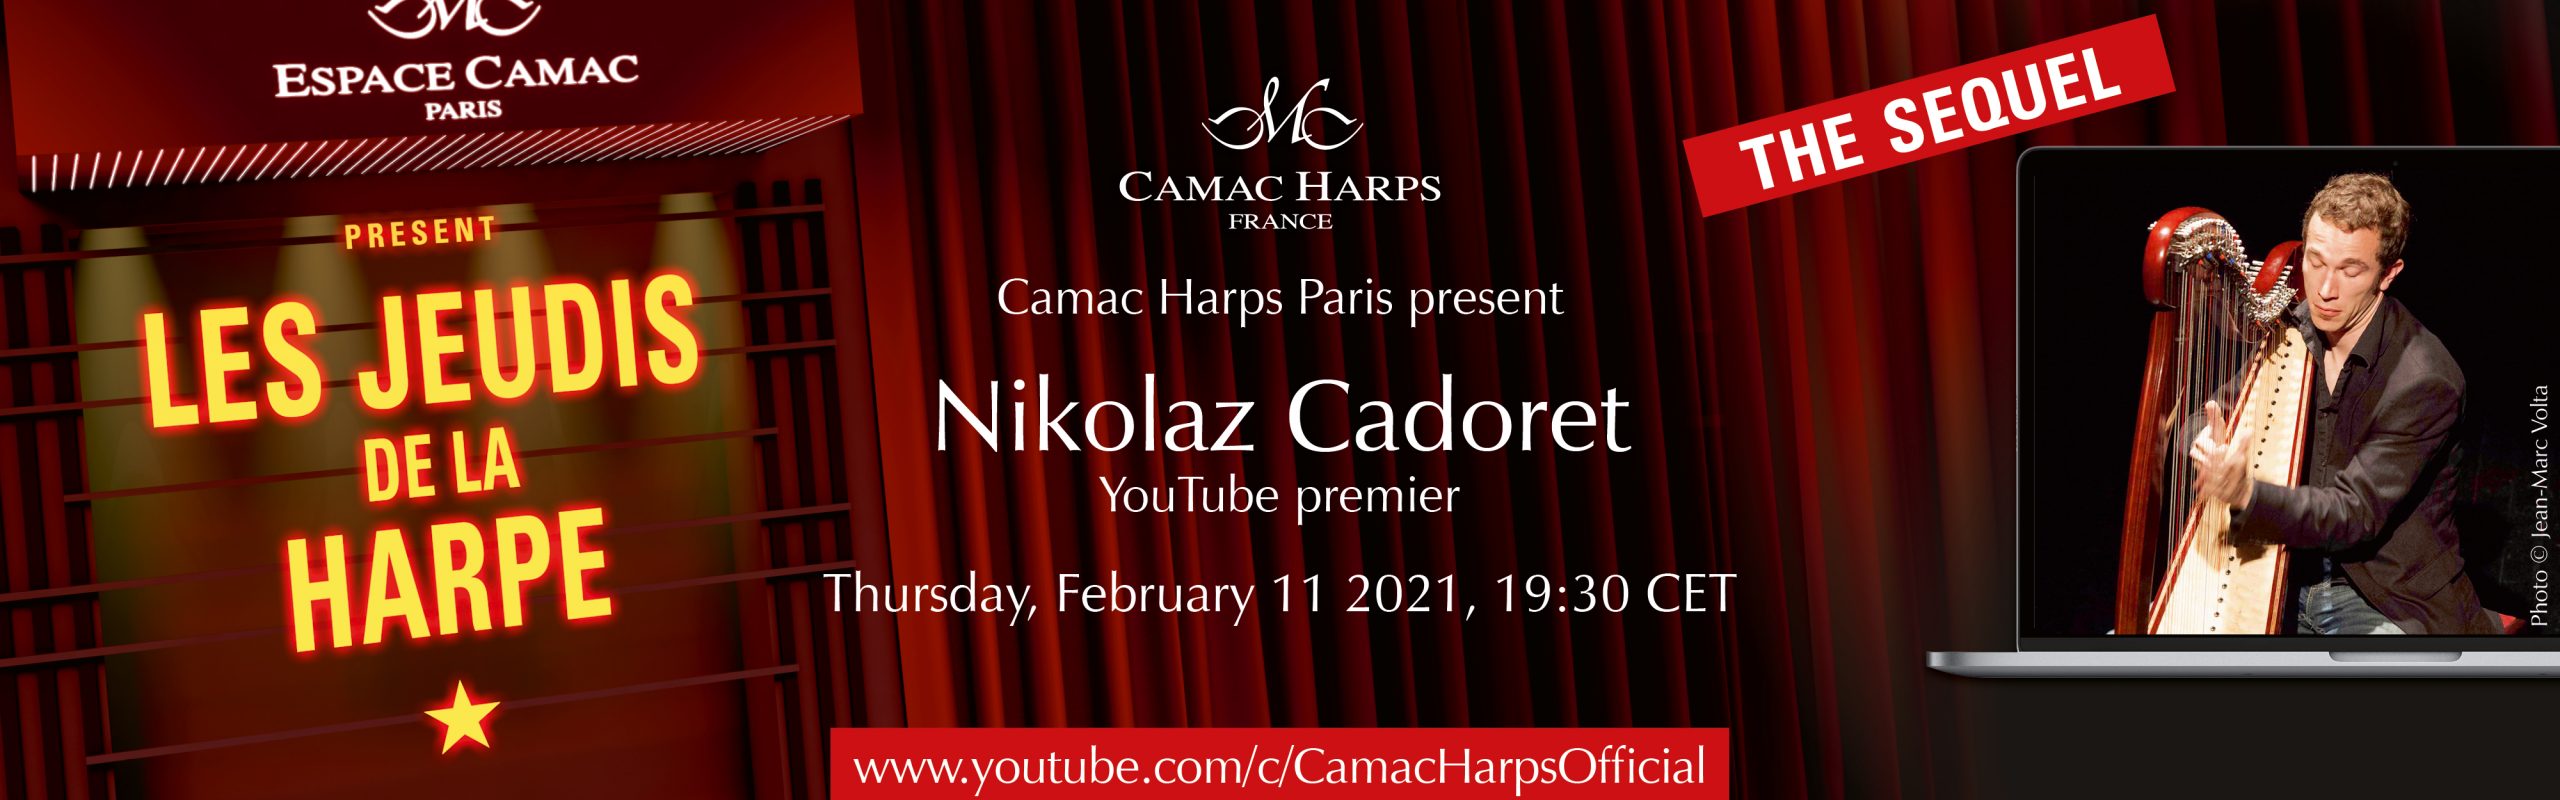 Les Jeudis de la Harpe : Nikolaz Cadoret